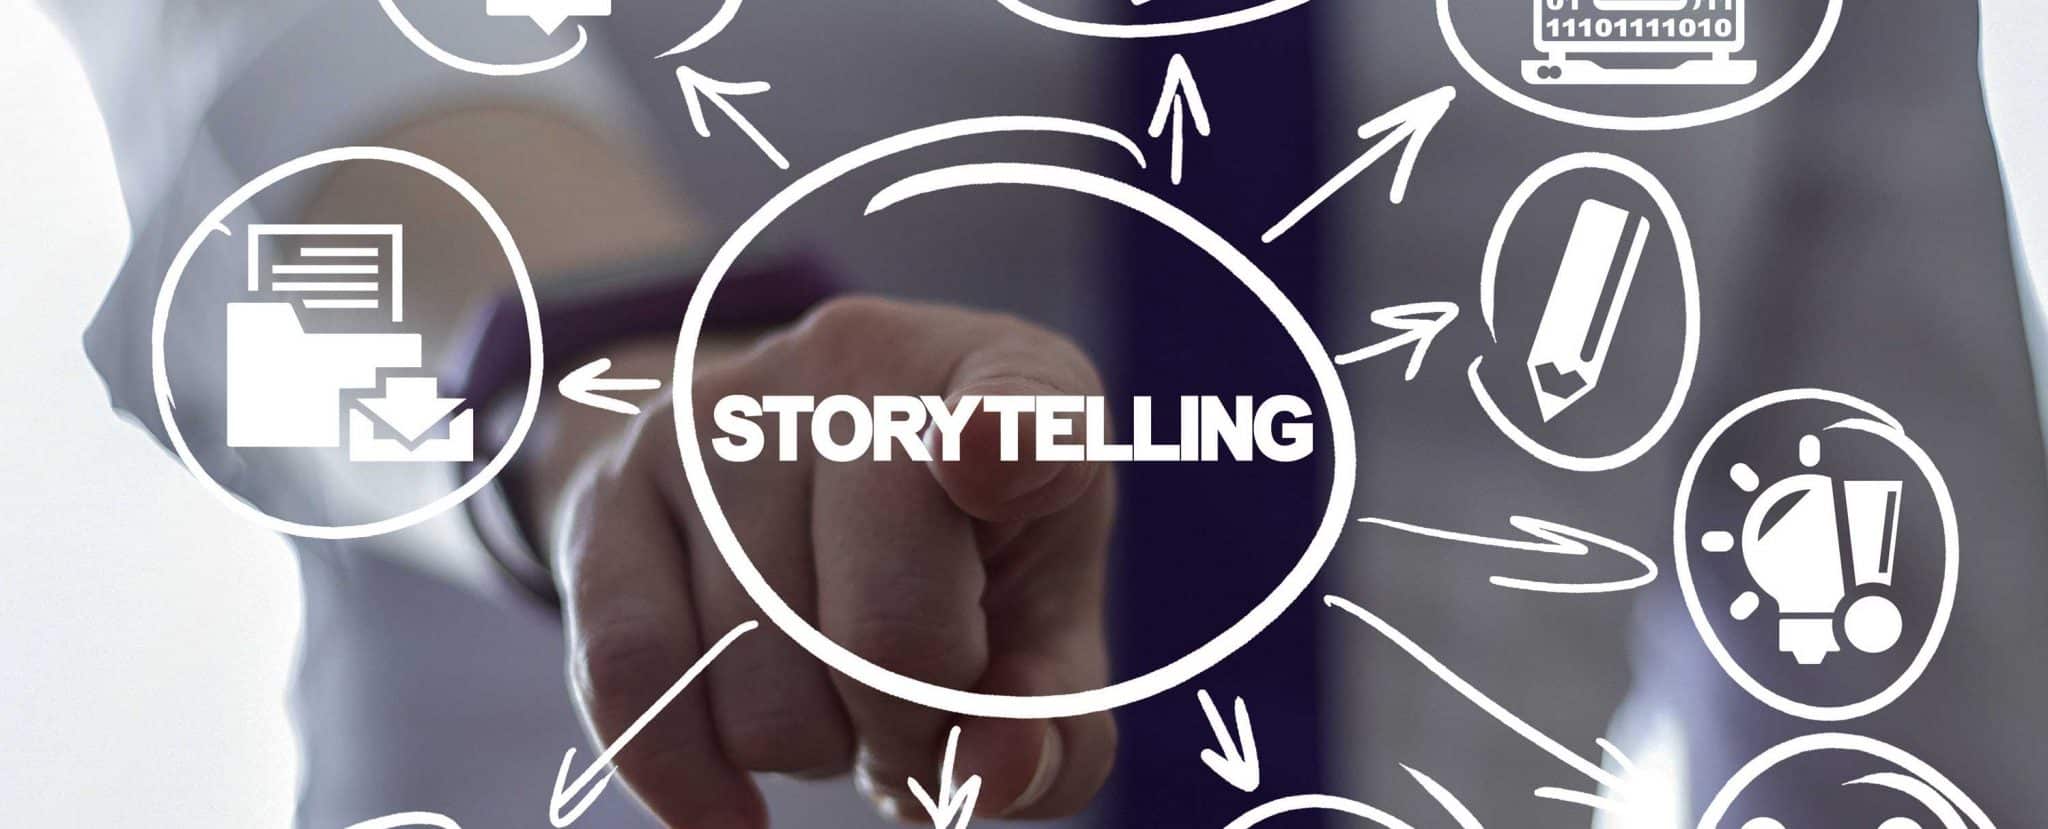 Storytelling für IT-Unternehmen